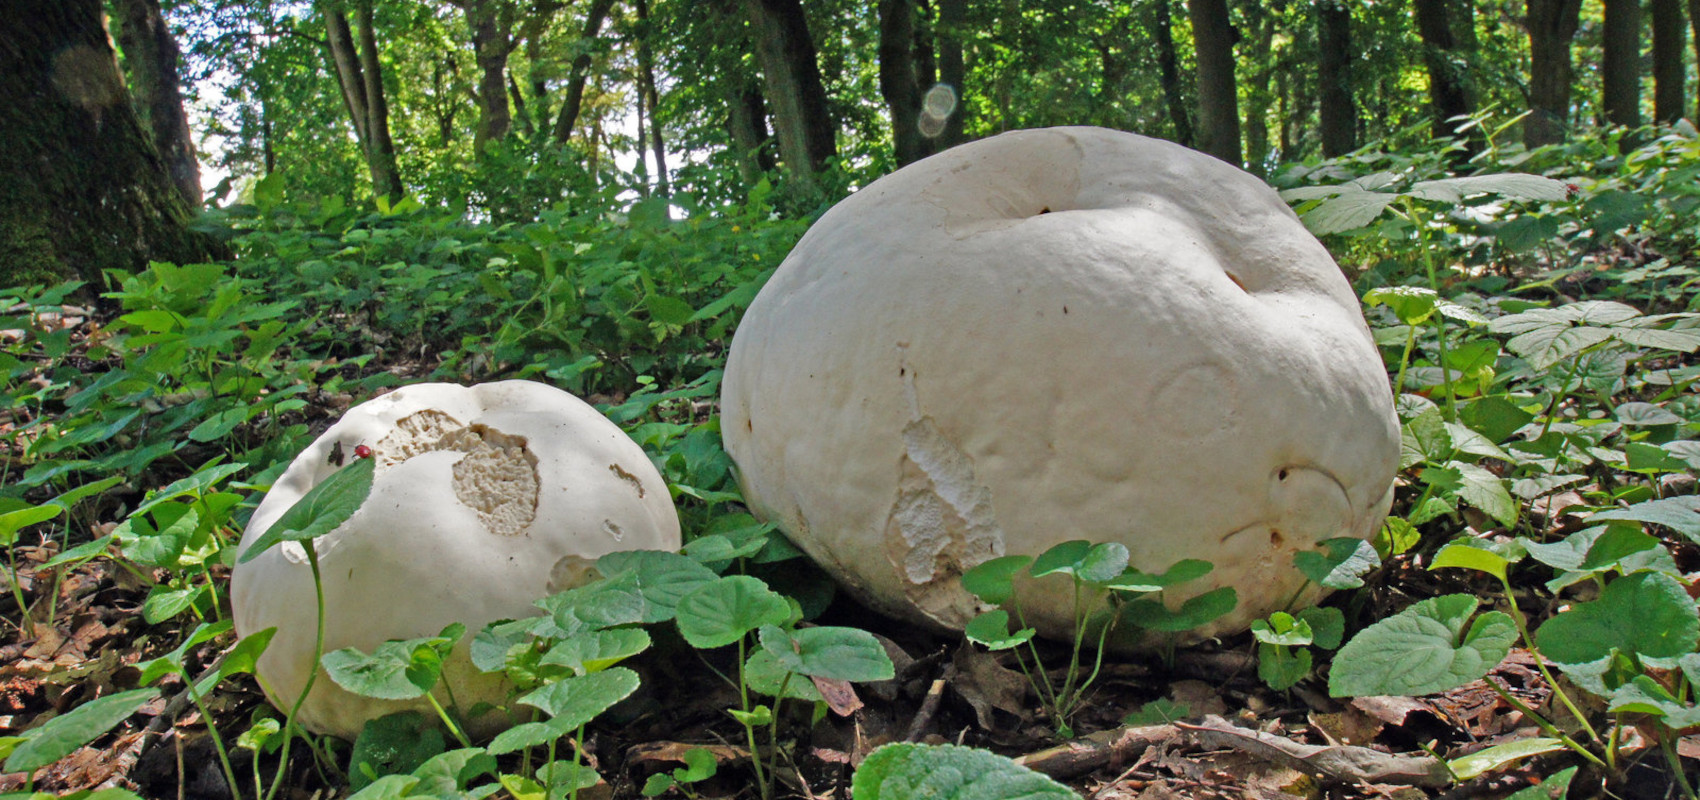 Purchawica olbrzymia – gigant wśród grzybów!